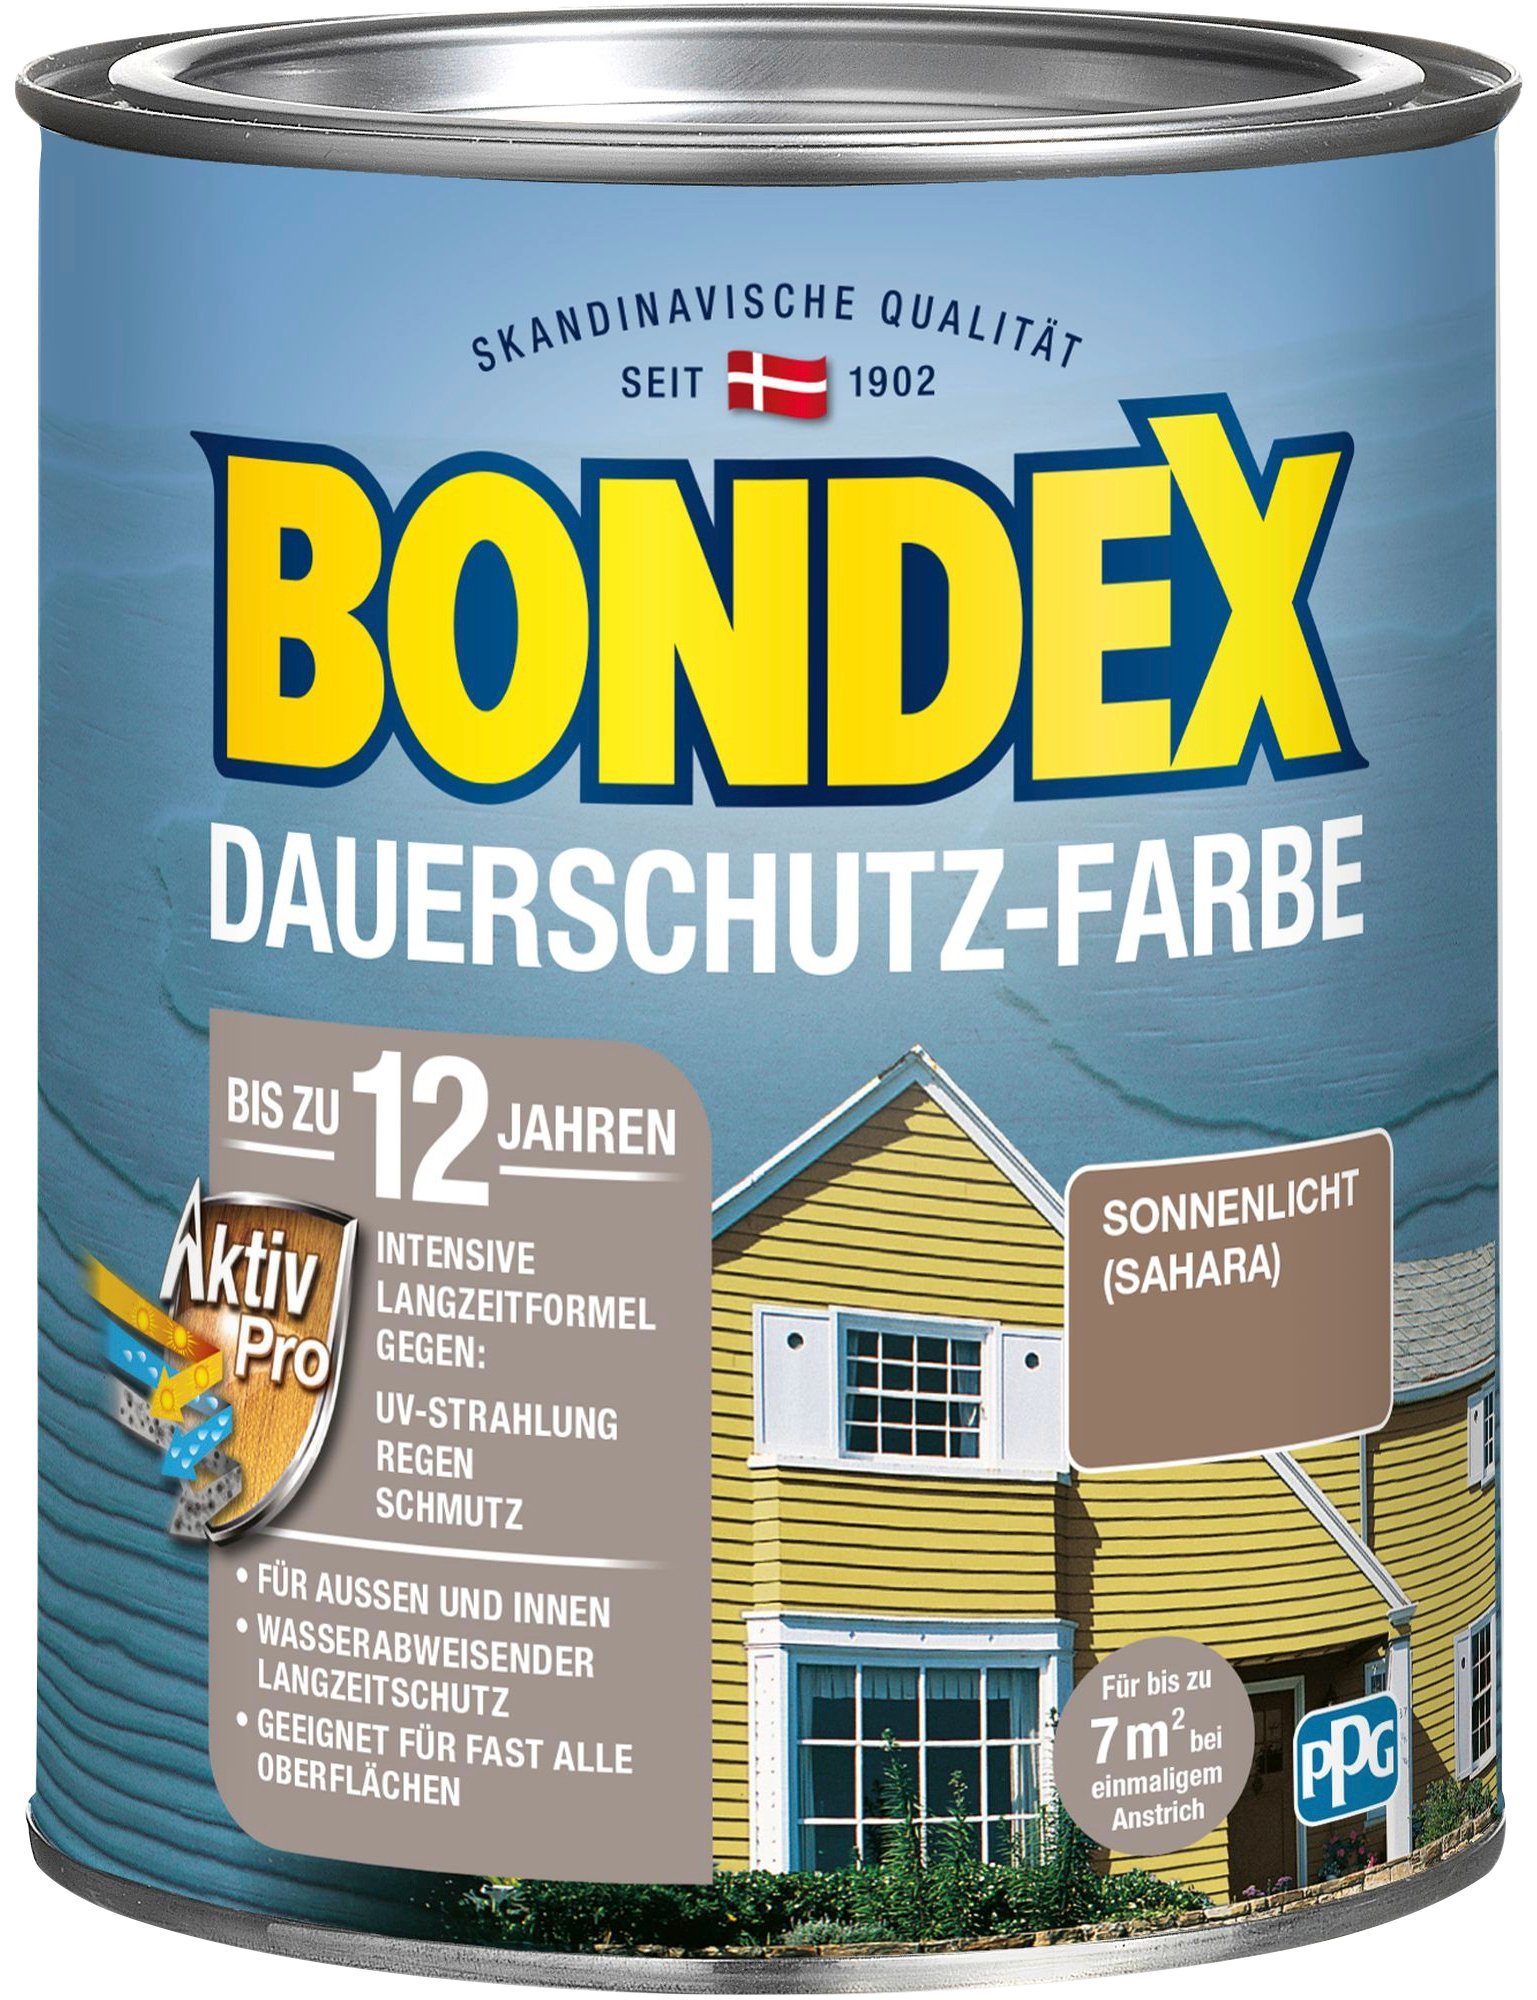 Bondex Wetterschutzfarbe DAUERSCHUTZ-FARBE, für Außen und Innen, Wetterschutz mit Aktiv Pro Langzeitformel Sonnenlicht / Sahara